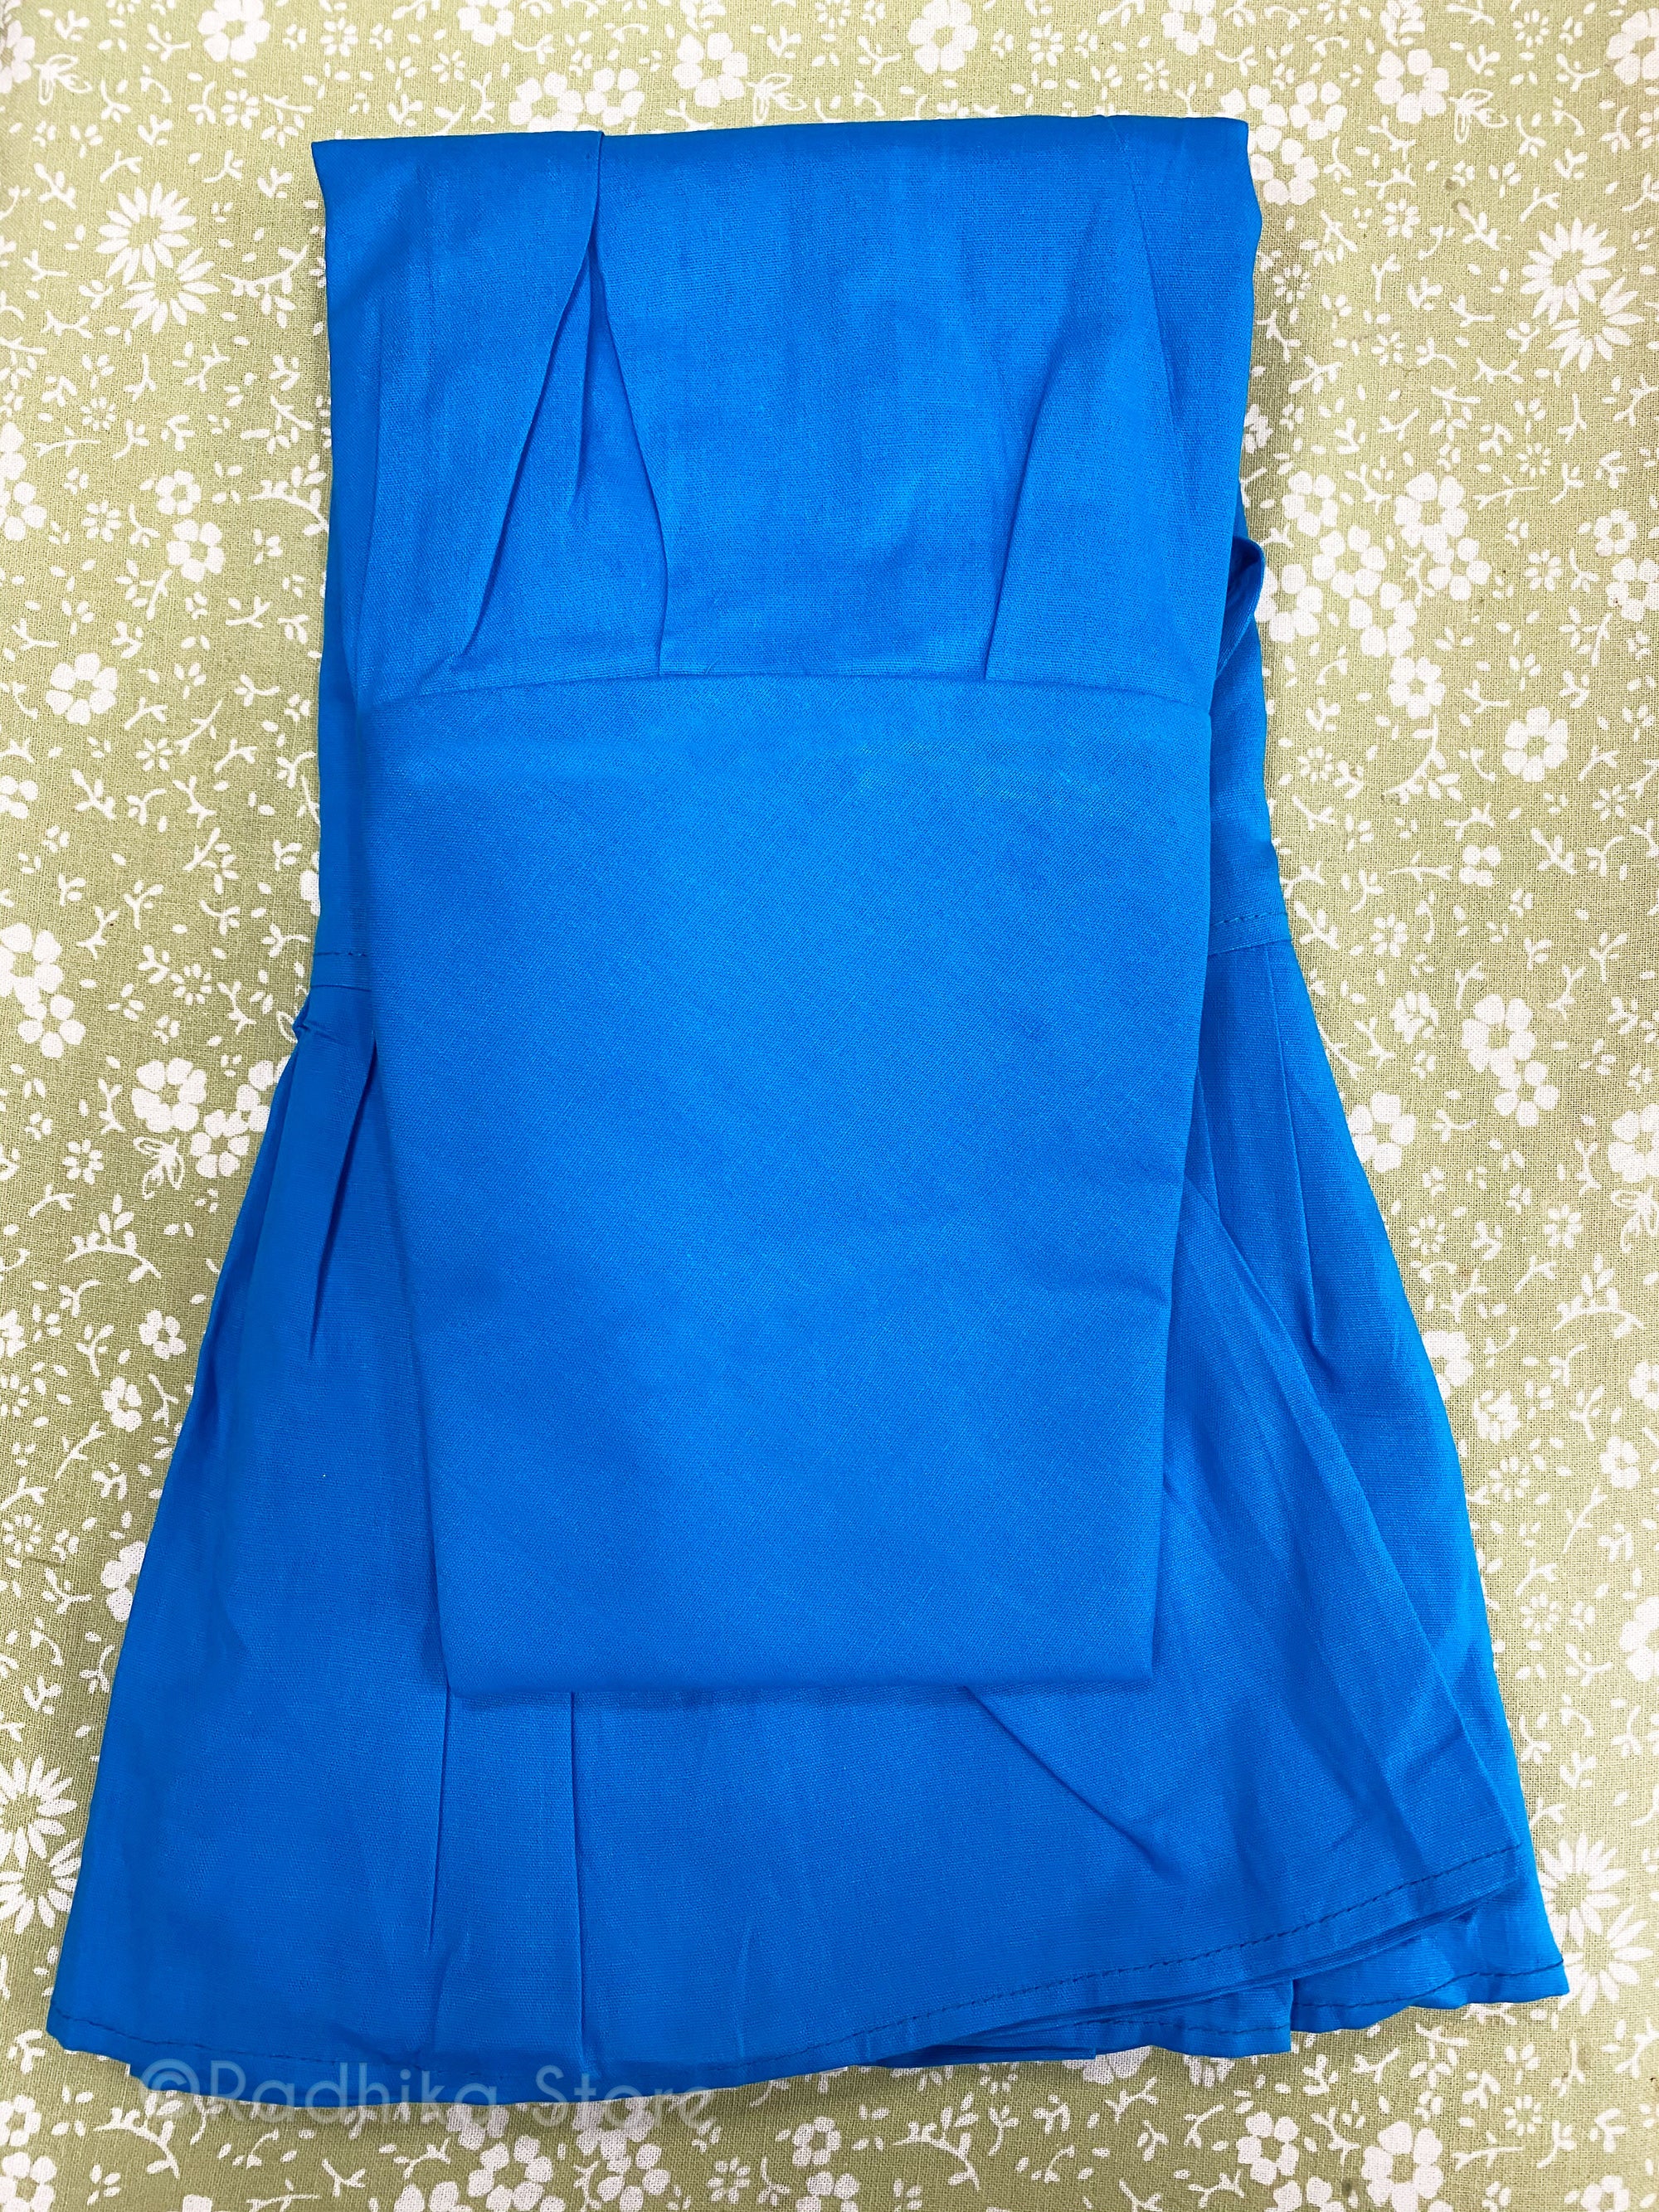 Teal Blue Petticoat/Slip - S, M, L, Xl